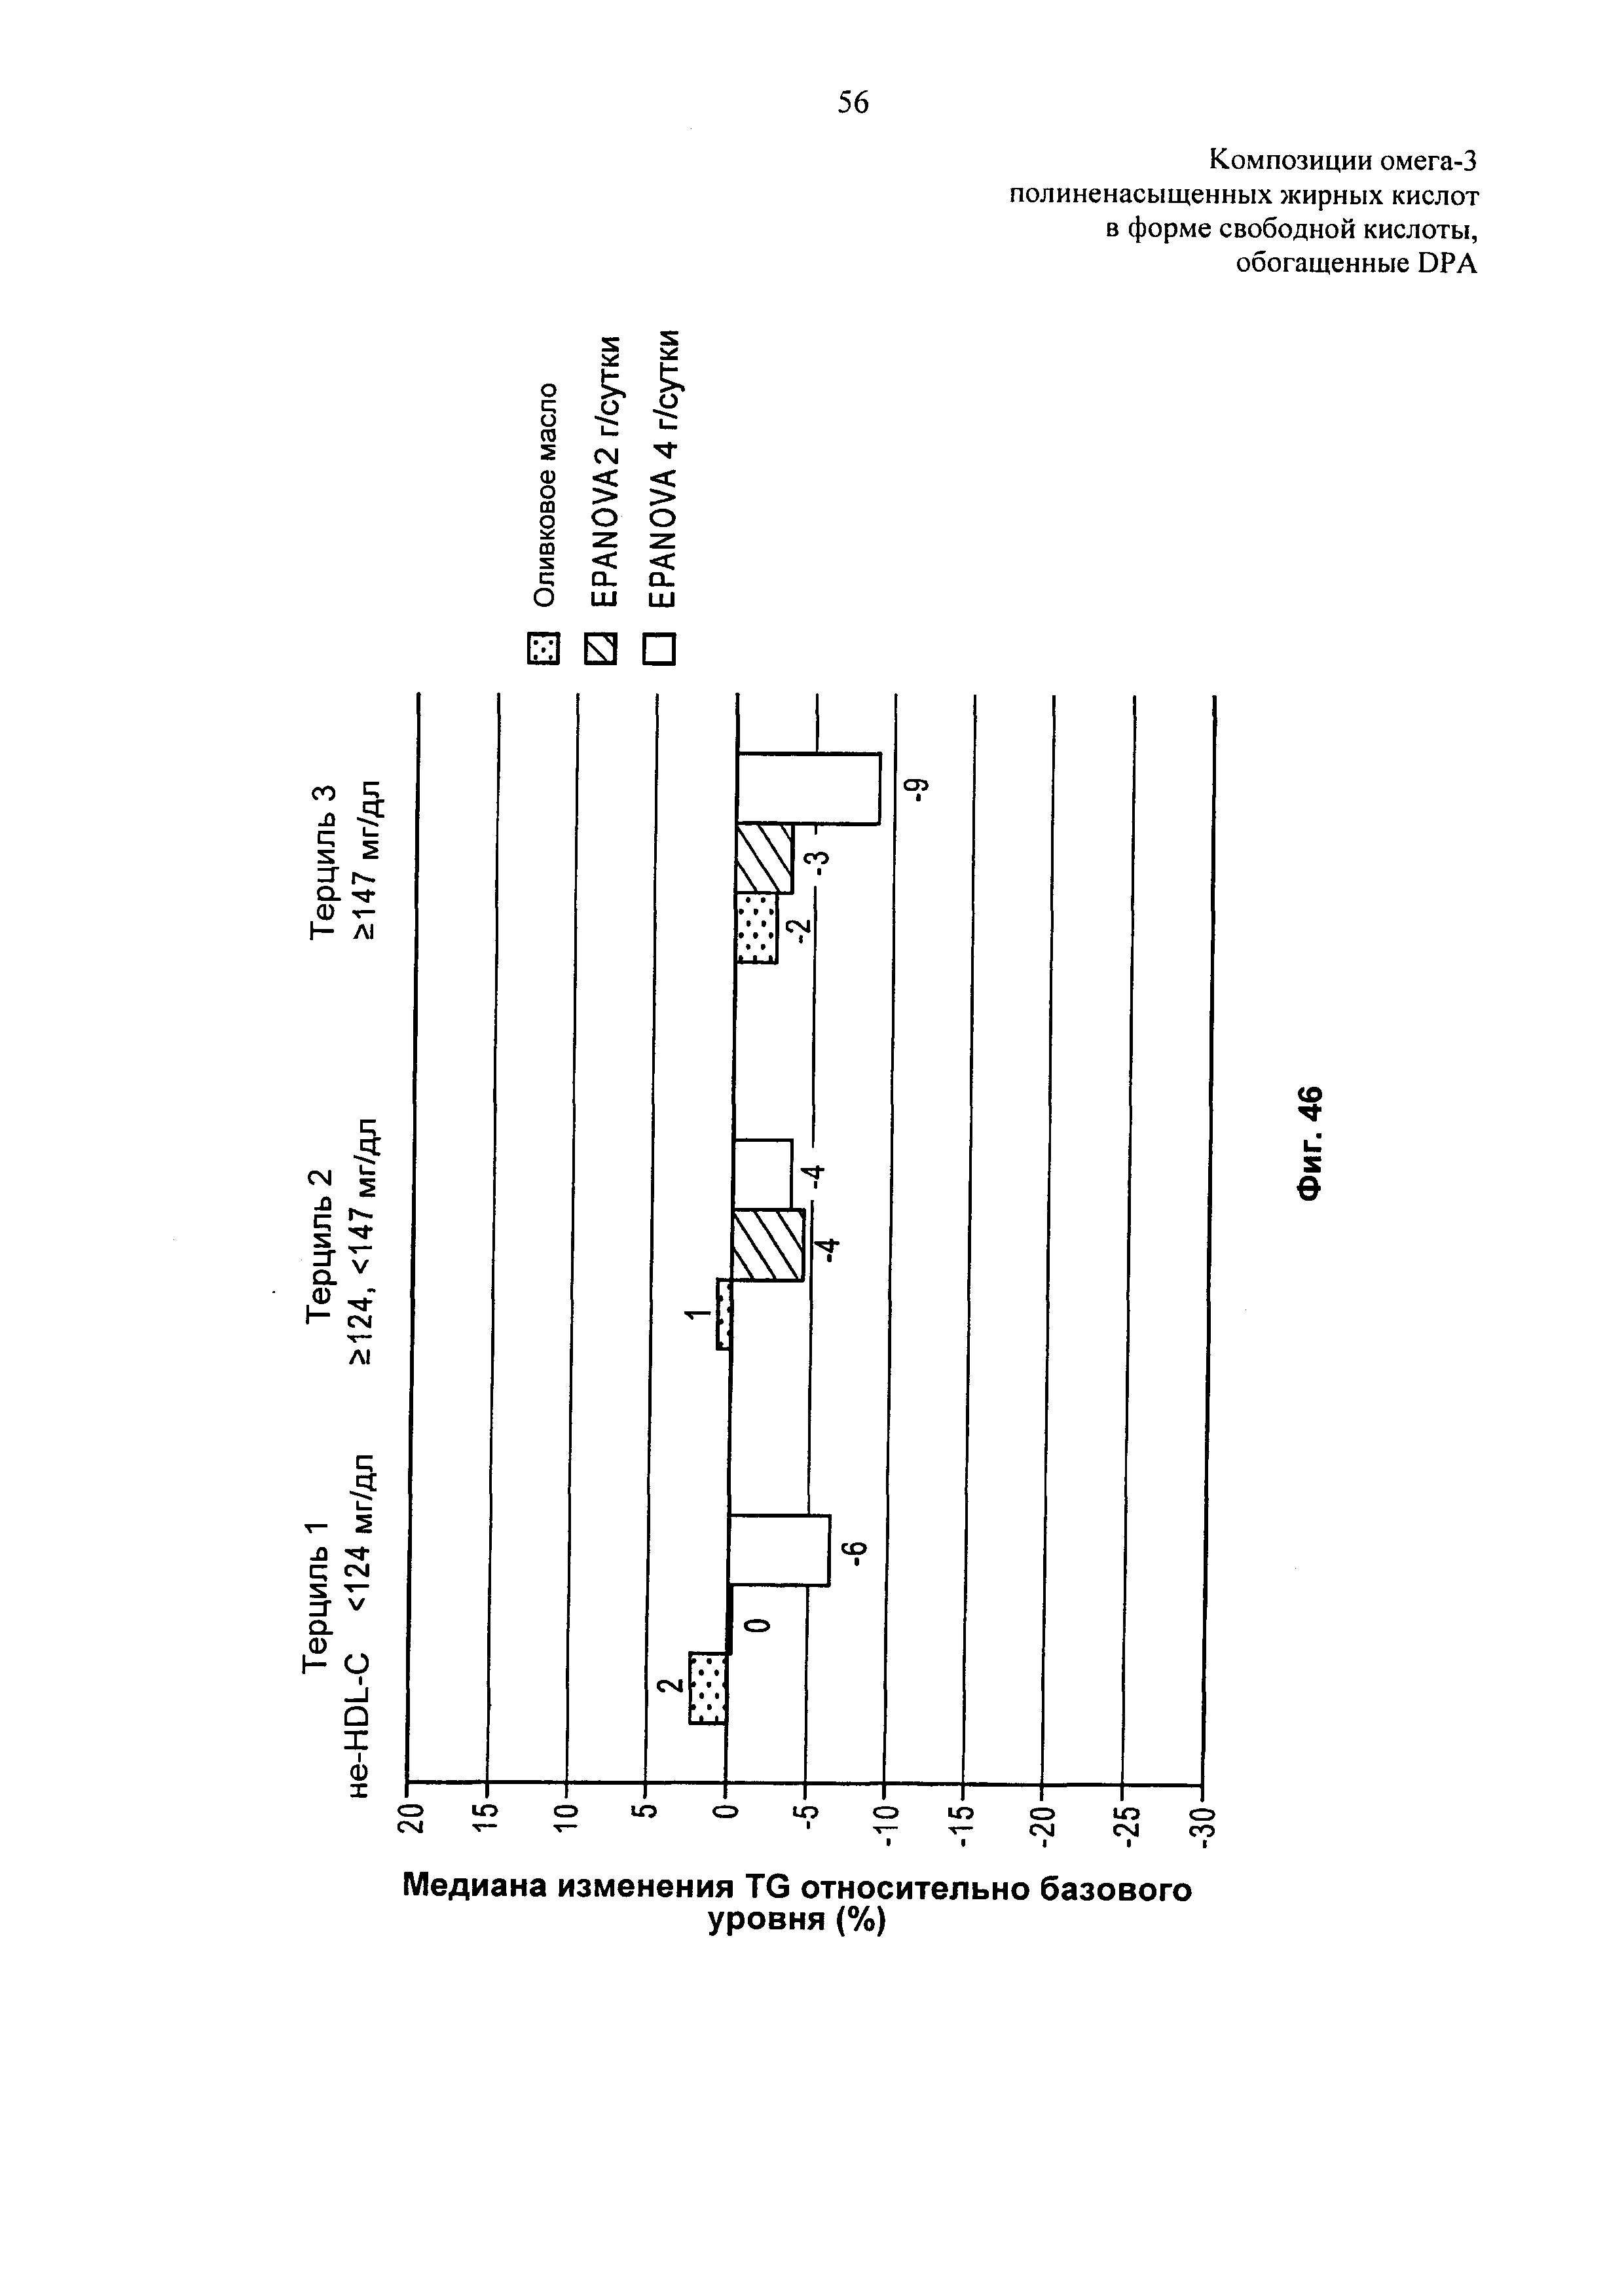 Композиции омега-3 полиненасыщенных жирных кислот в форме свободной кислоты, обогащенные DPA